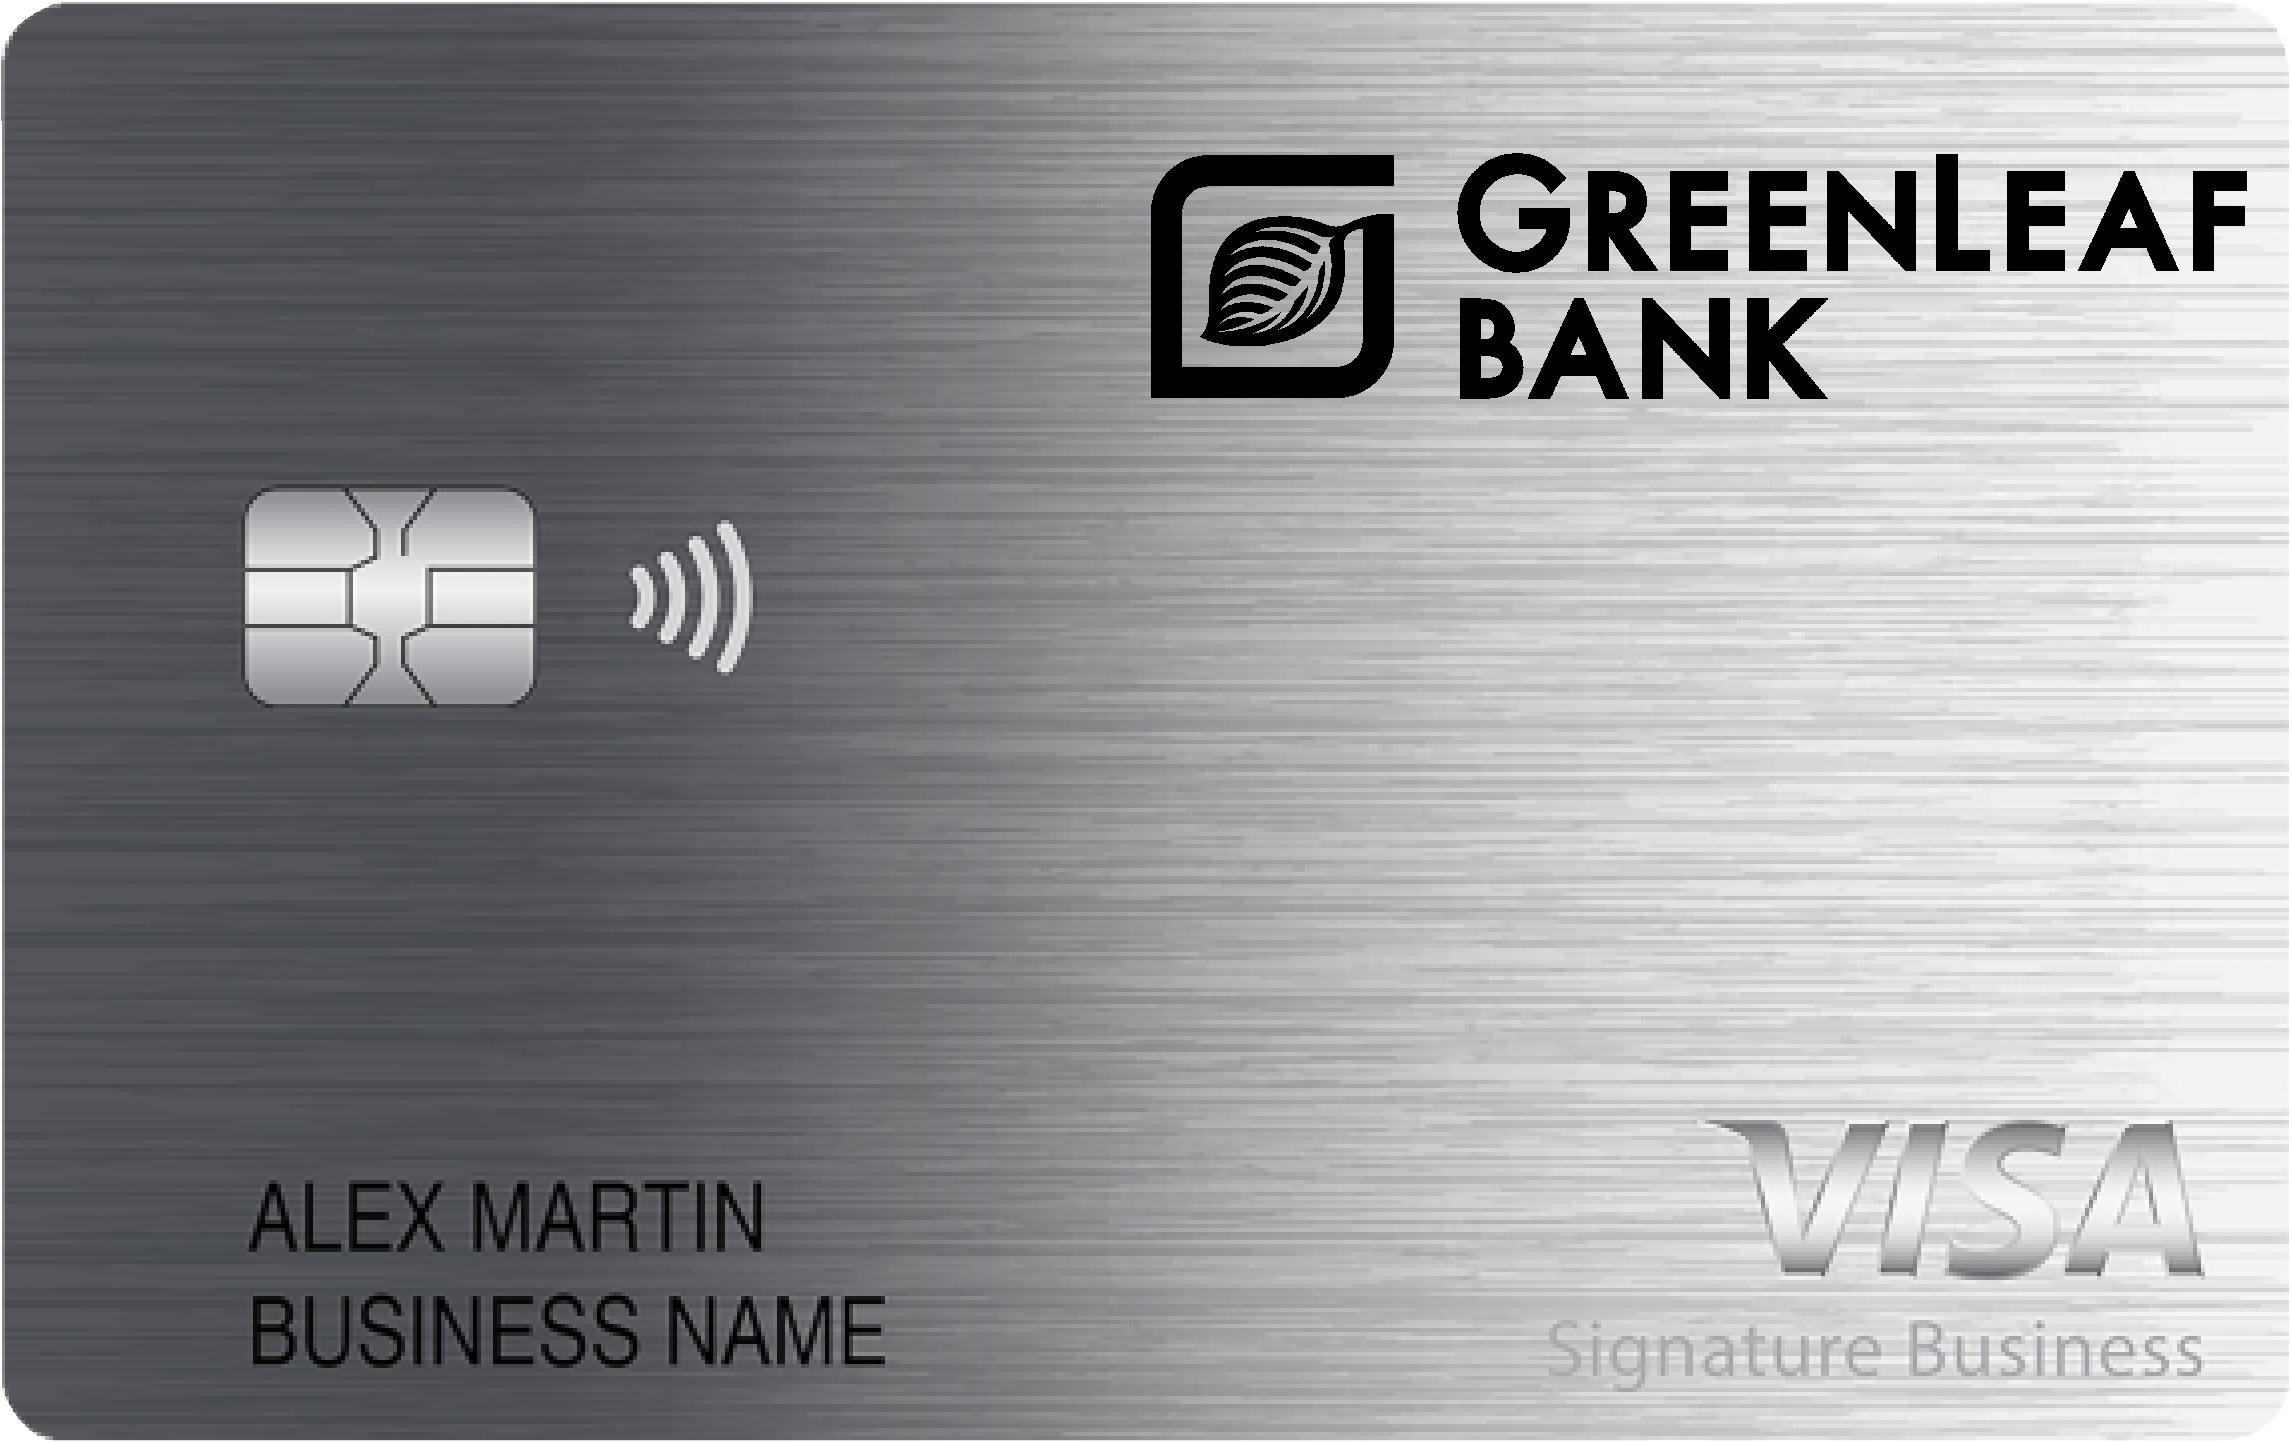 Greenleaf Bank Smart Business Rewards Card